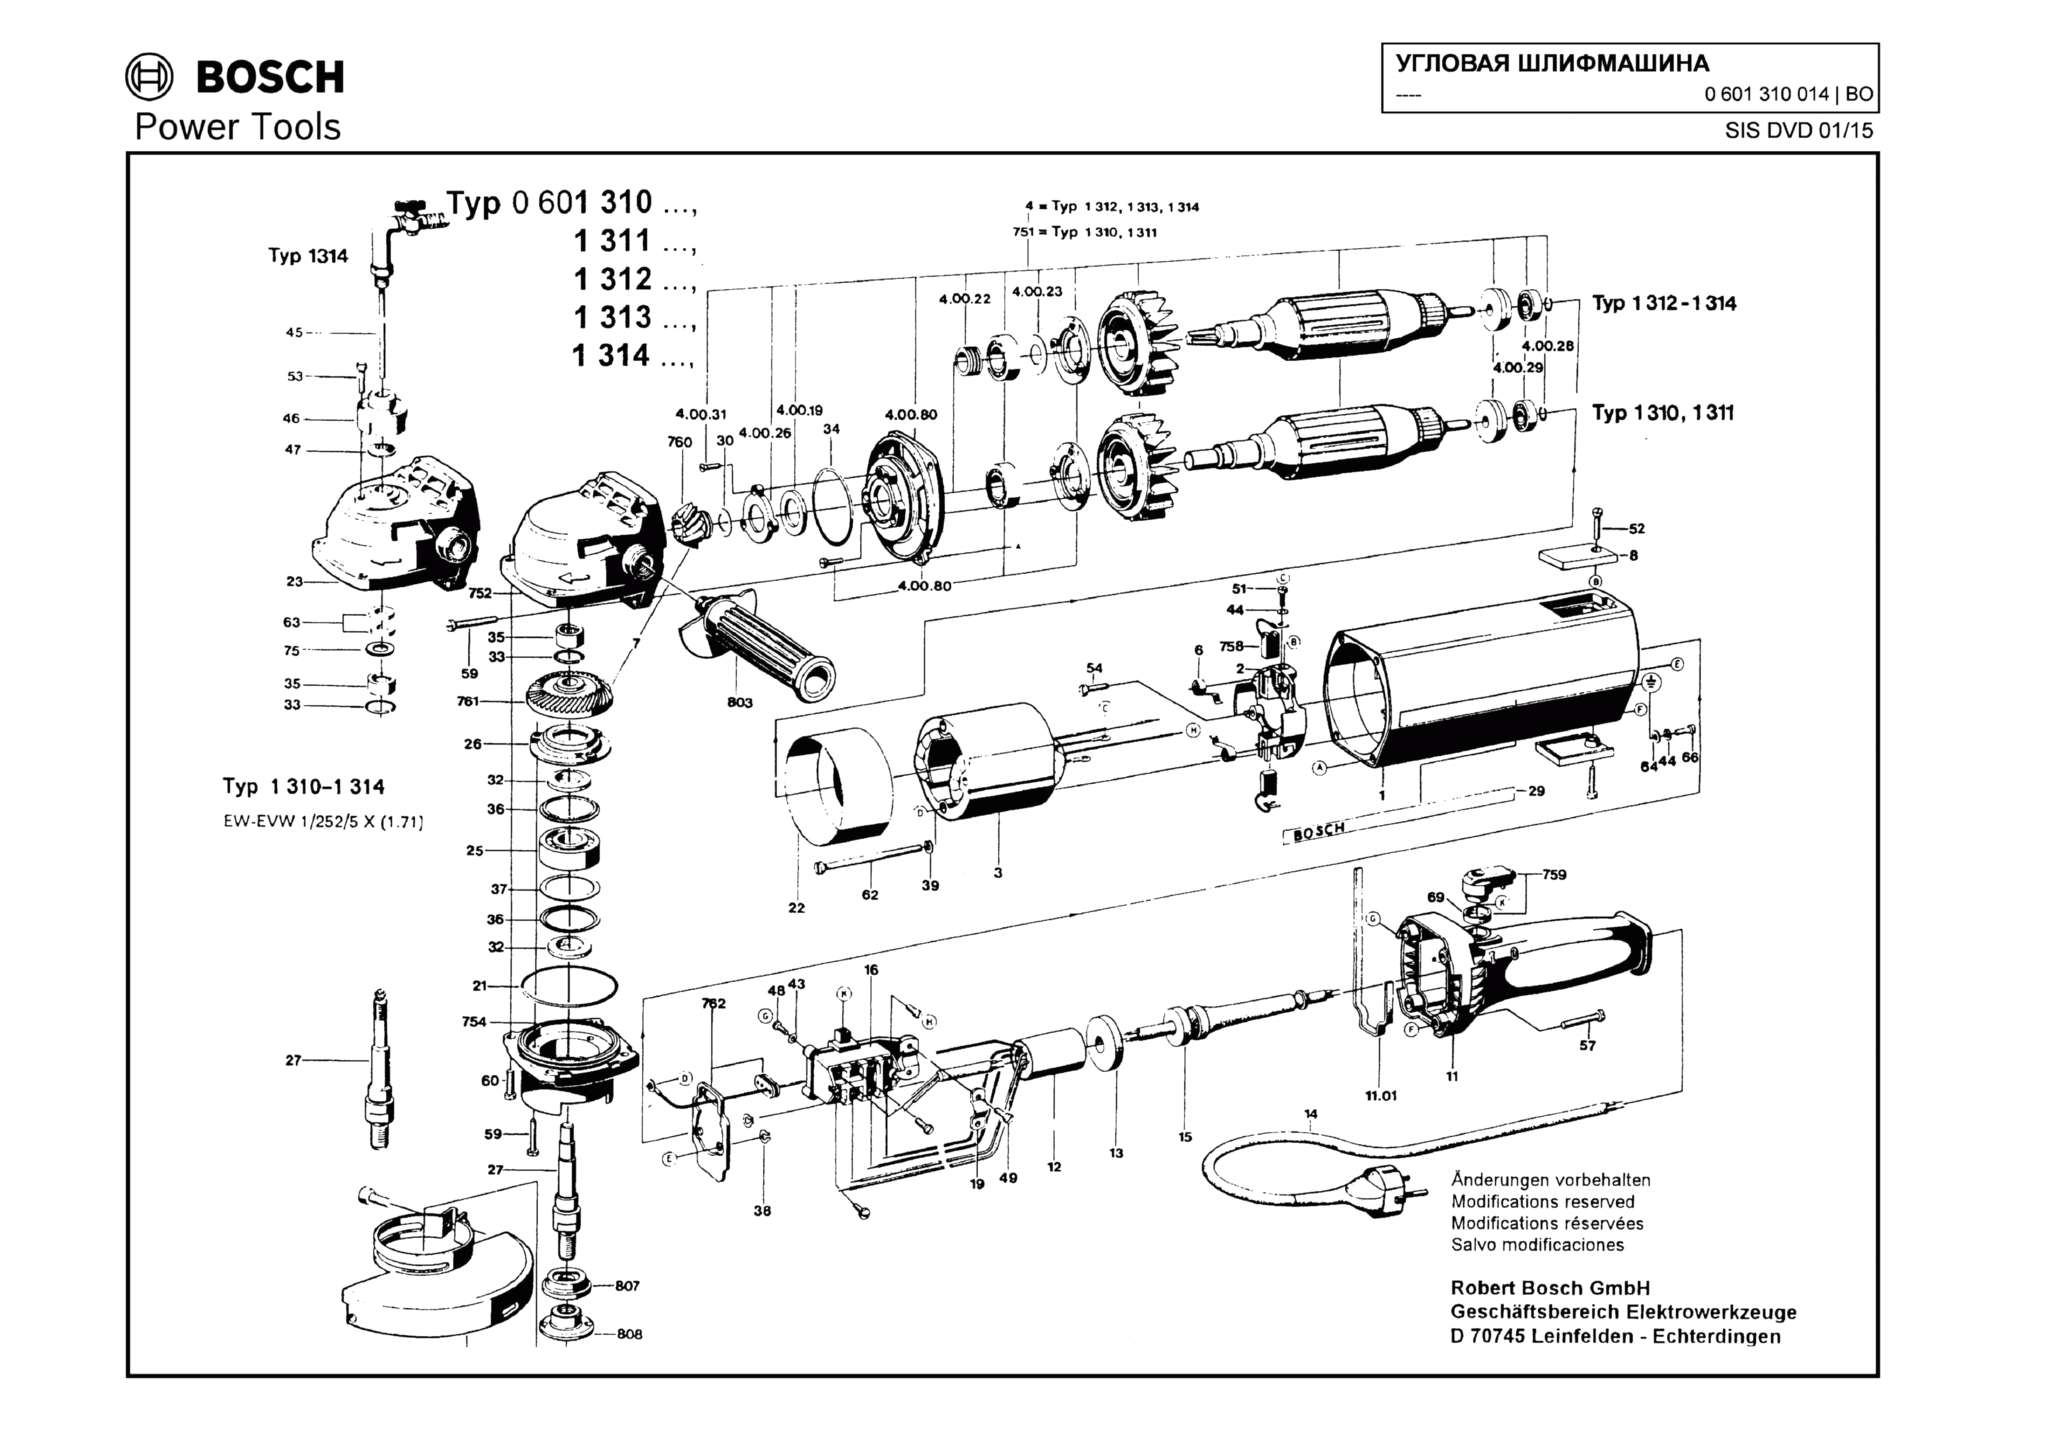 Запчасти, схема и деталировка Bosch (ТИП 0601310014)